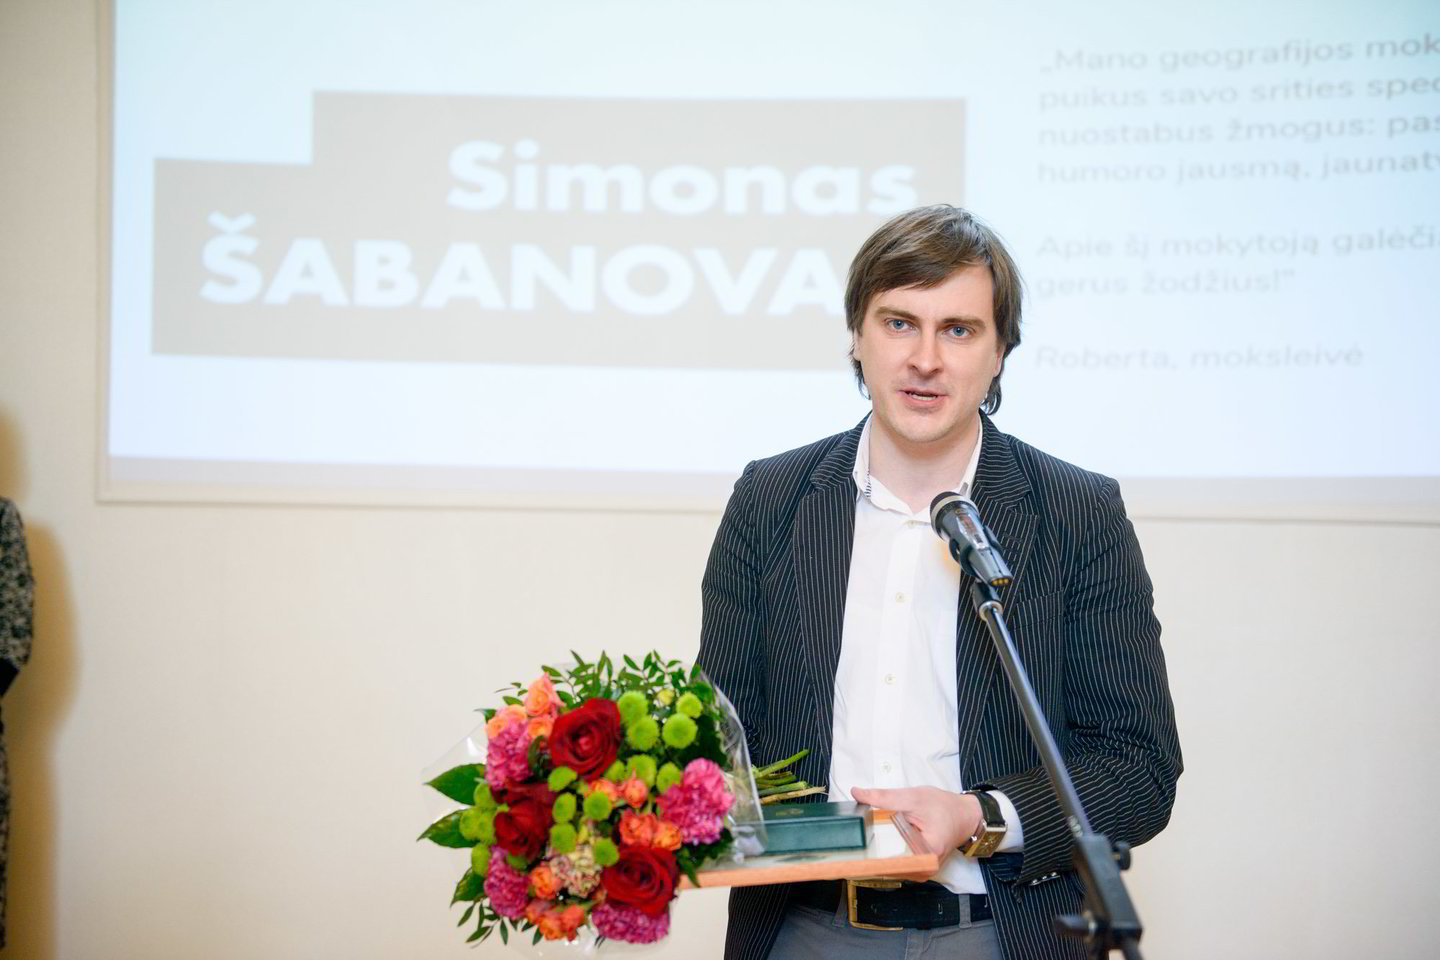  Vos pradėjęs dirbti po 3 metų savo mokykloje S.Šabanovas buvo išrinktas metų mokytoju. O šiemet jis įvertintas kaip ir vienas geriausių Lietuvos mokytojų. <br> S.Stacevičiaus nuotr. 